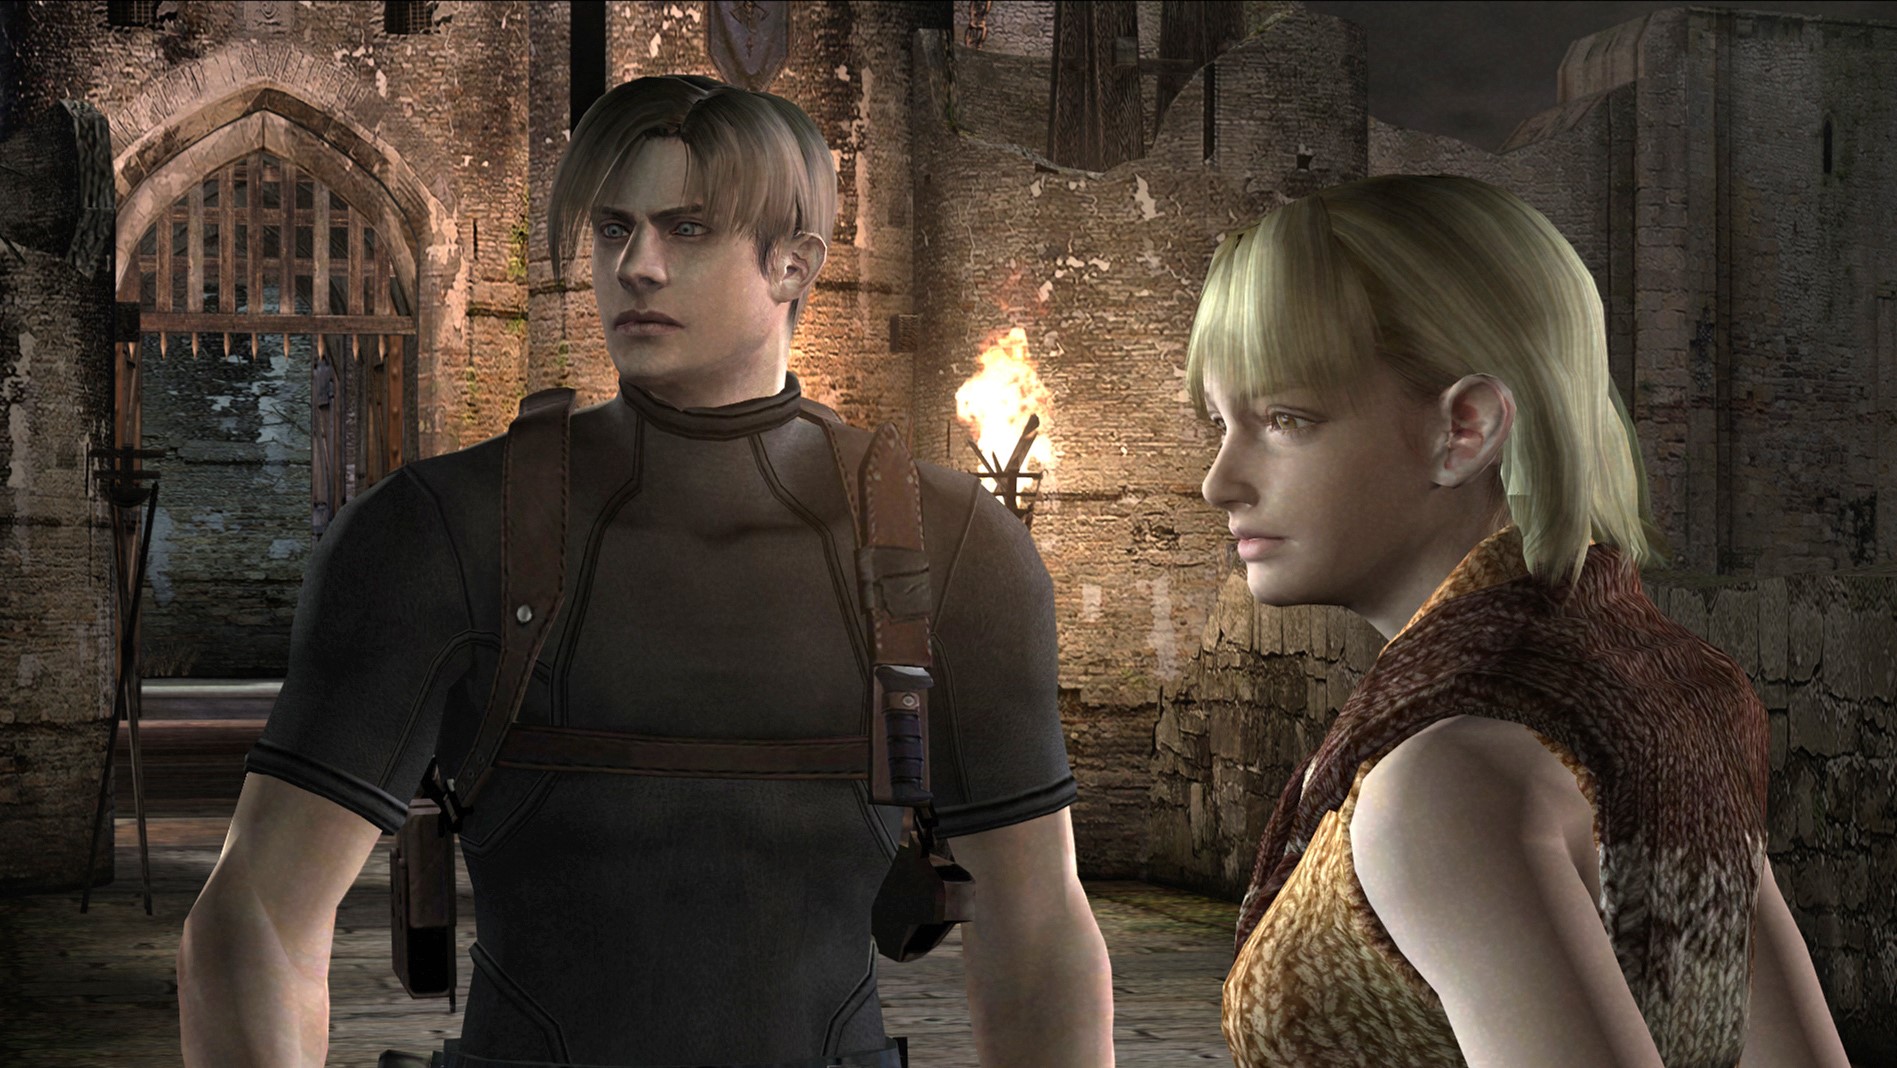 Jogo Resident Evil Village PS5 Capcom com o Melhor Preço é no Zoom